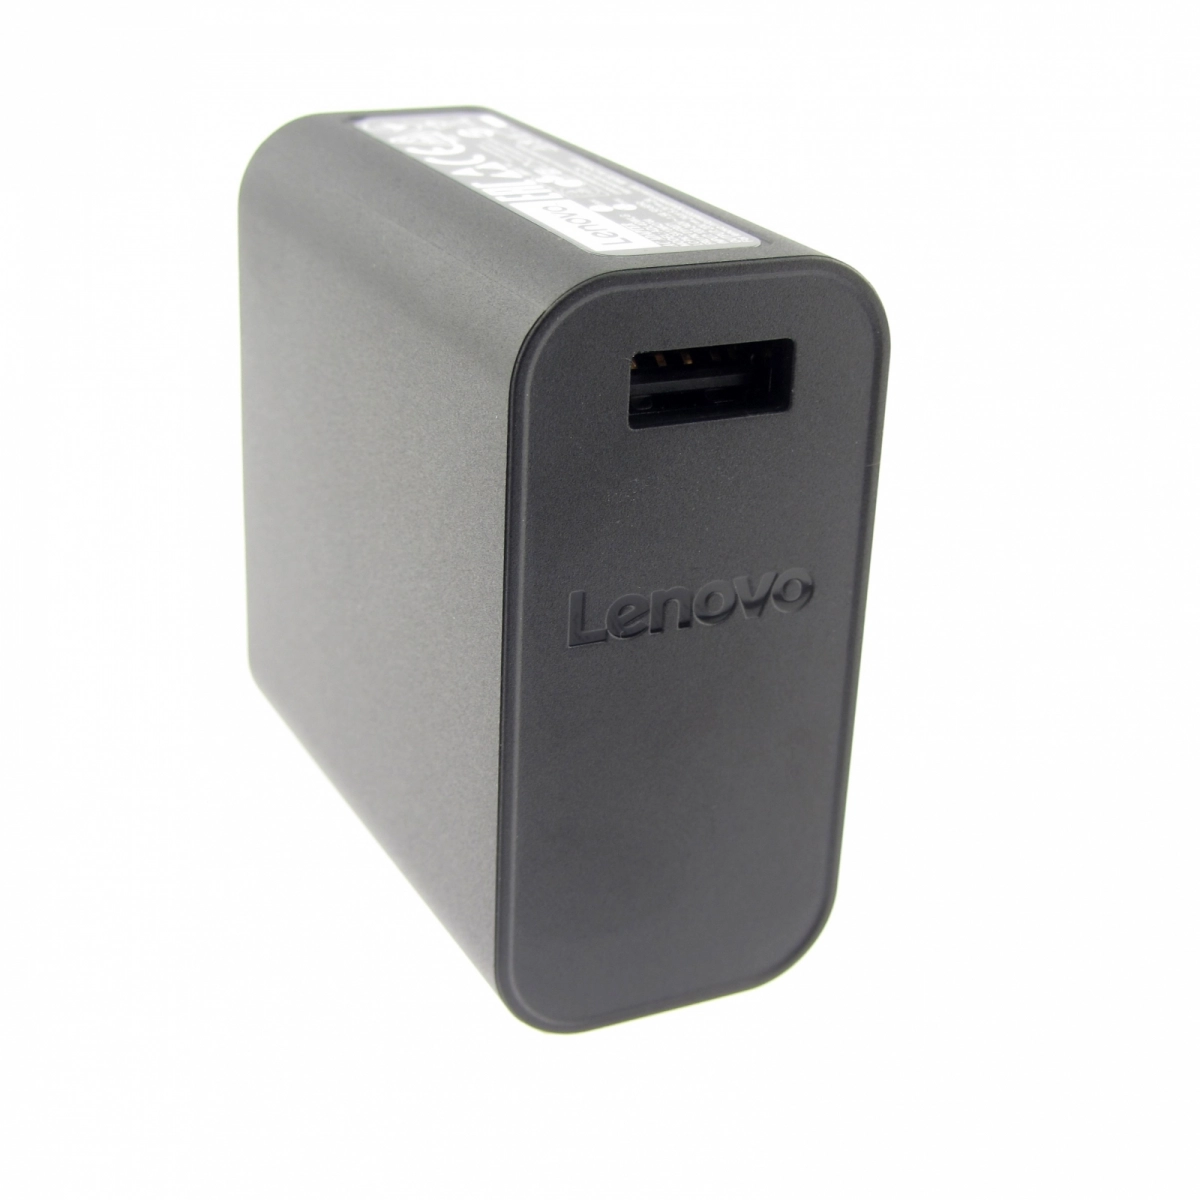 Original Netzteil für LENOVO SA10M42744, 20V, 2A, Stecker USB, ohne USB-Kabel